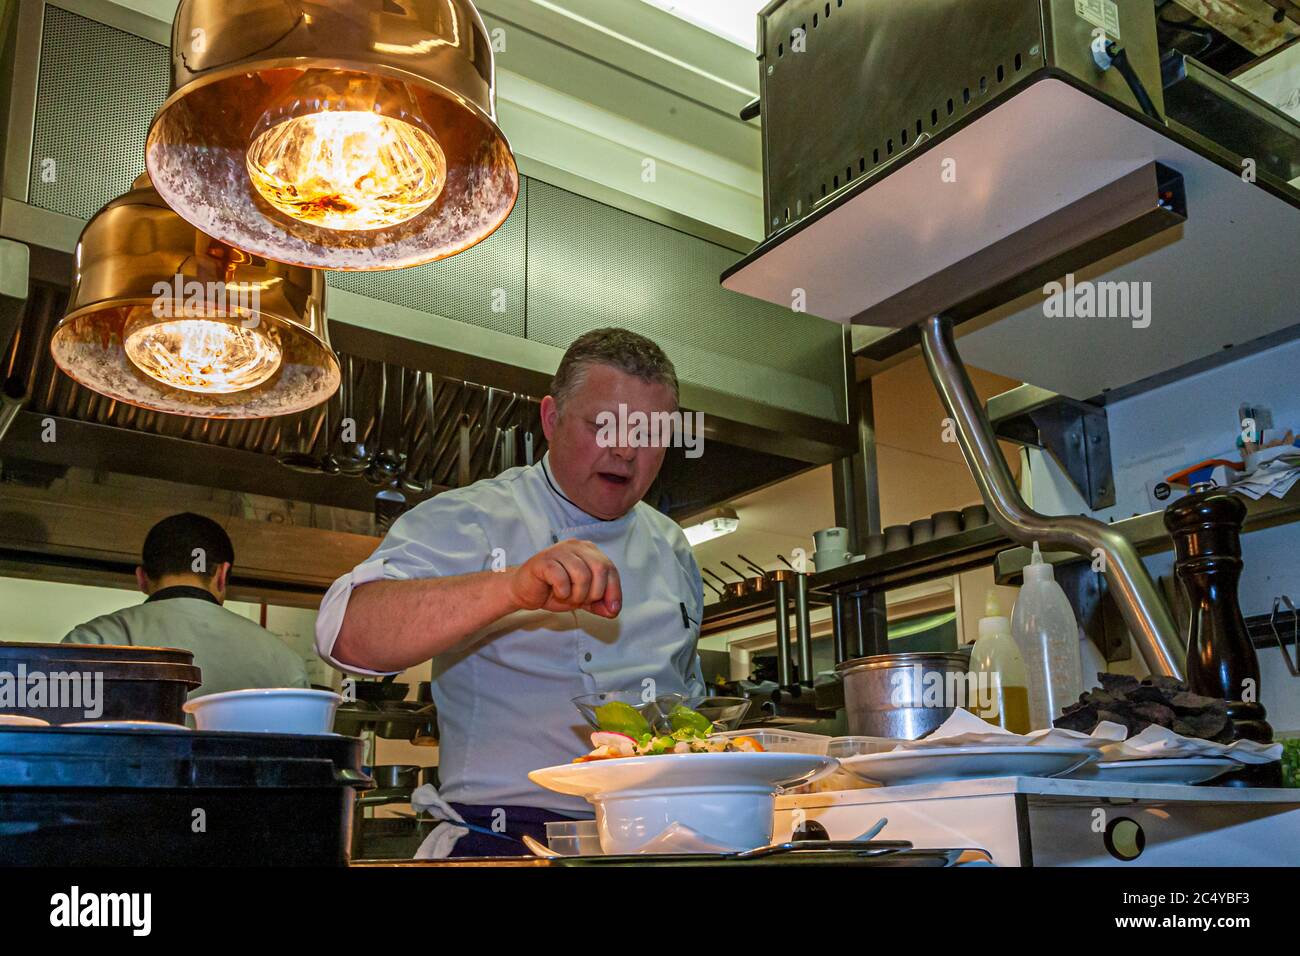 Loic le bail, chef étoilé au guide Michelin, dans la cuisine de l'hôtel Brittany and Spa, Morlaix-Roscoff, France Banque D'Images